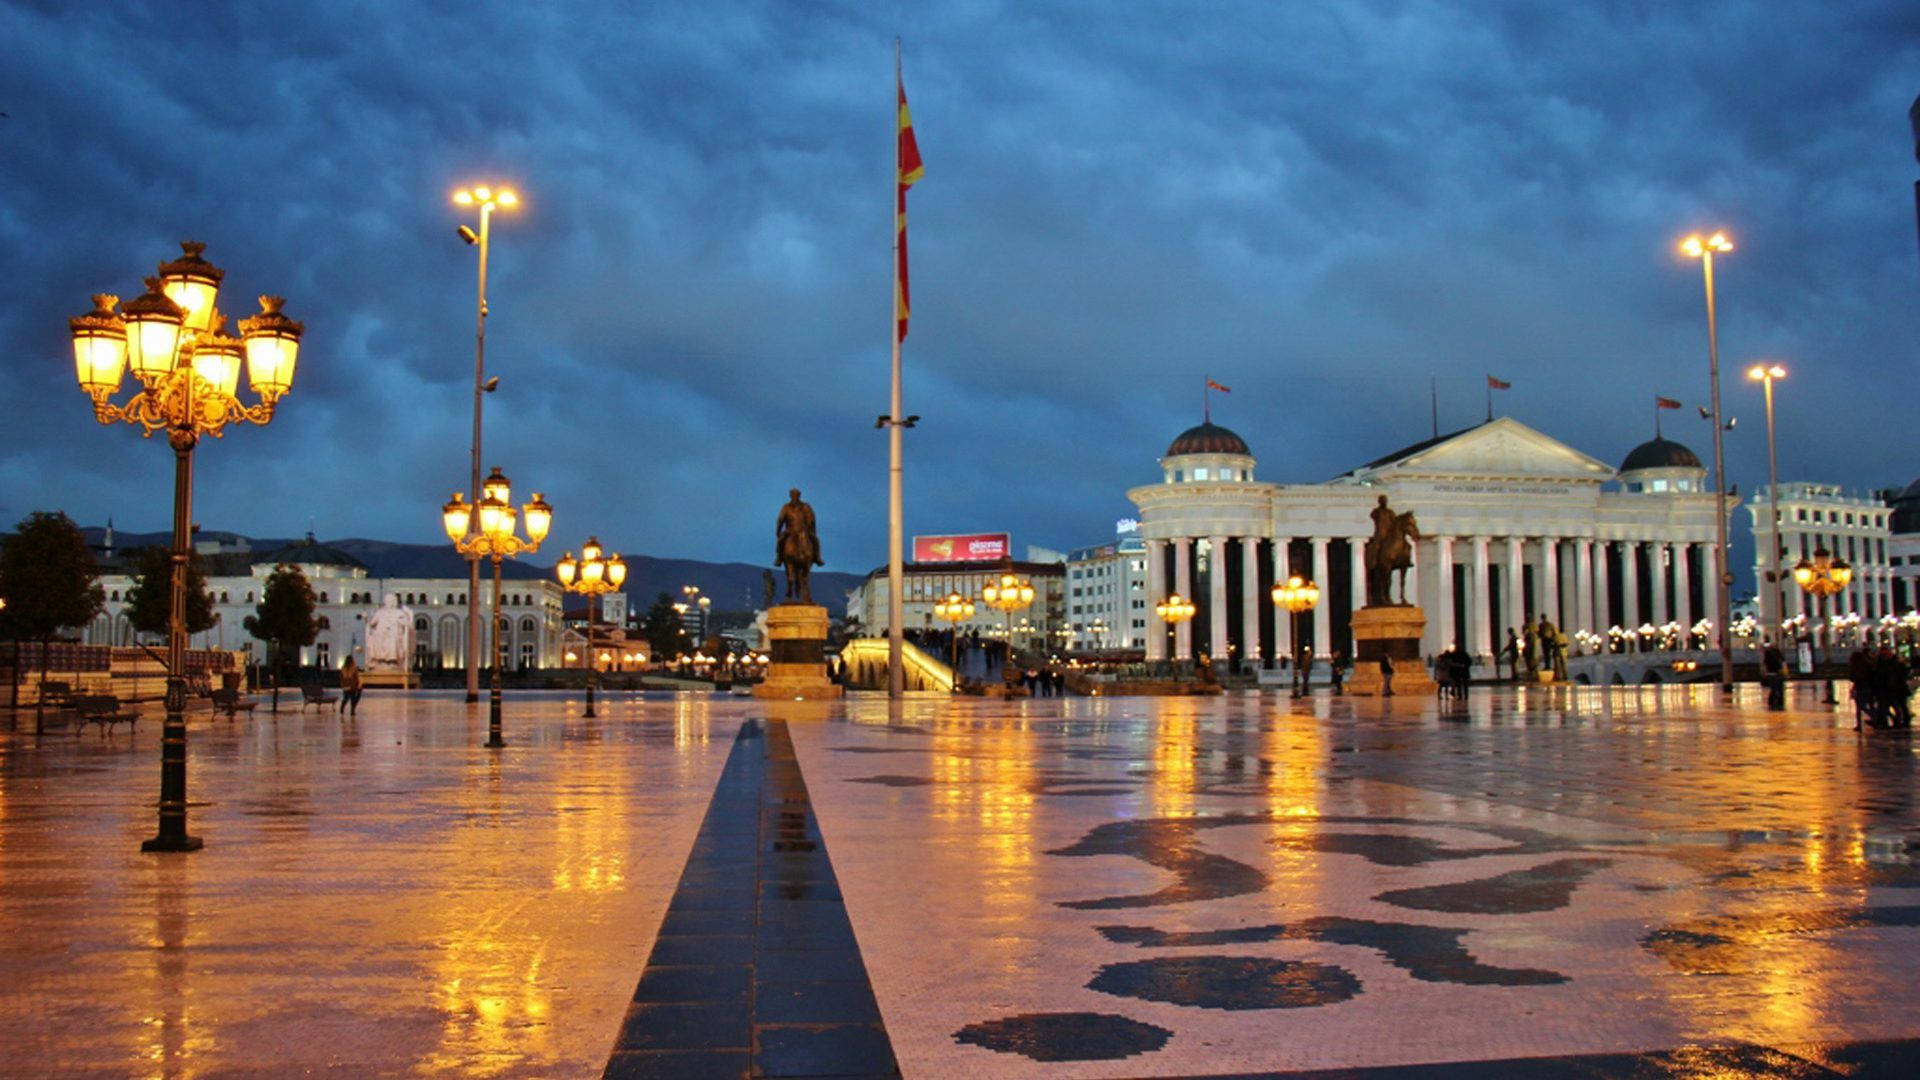 Macedonia Square At Night